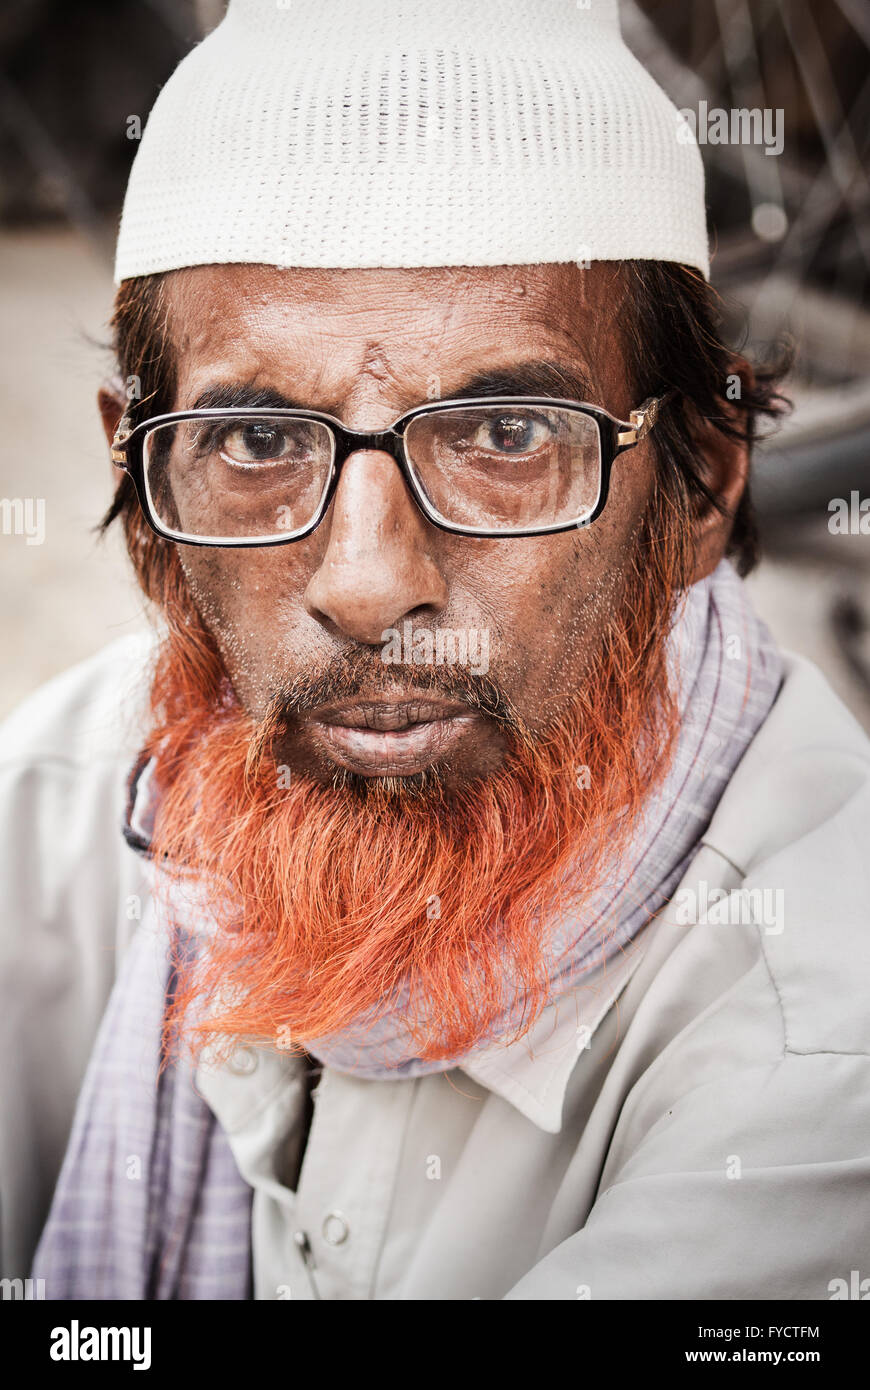 Henna tinti barba visualizzati in un ritratto fotografia di un musulmano indiano uomo Foto Stock